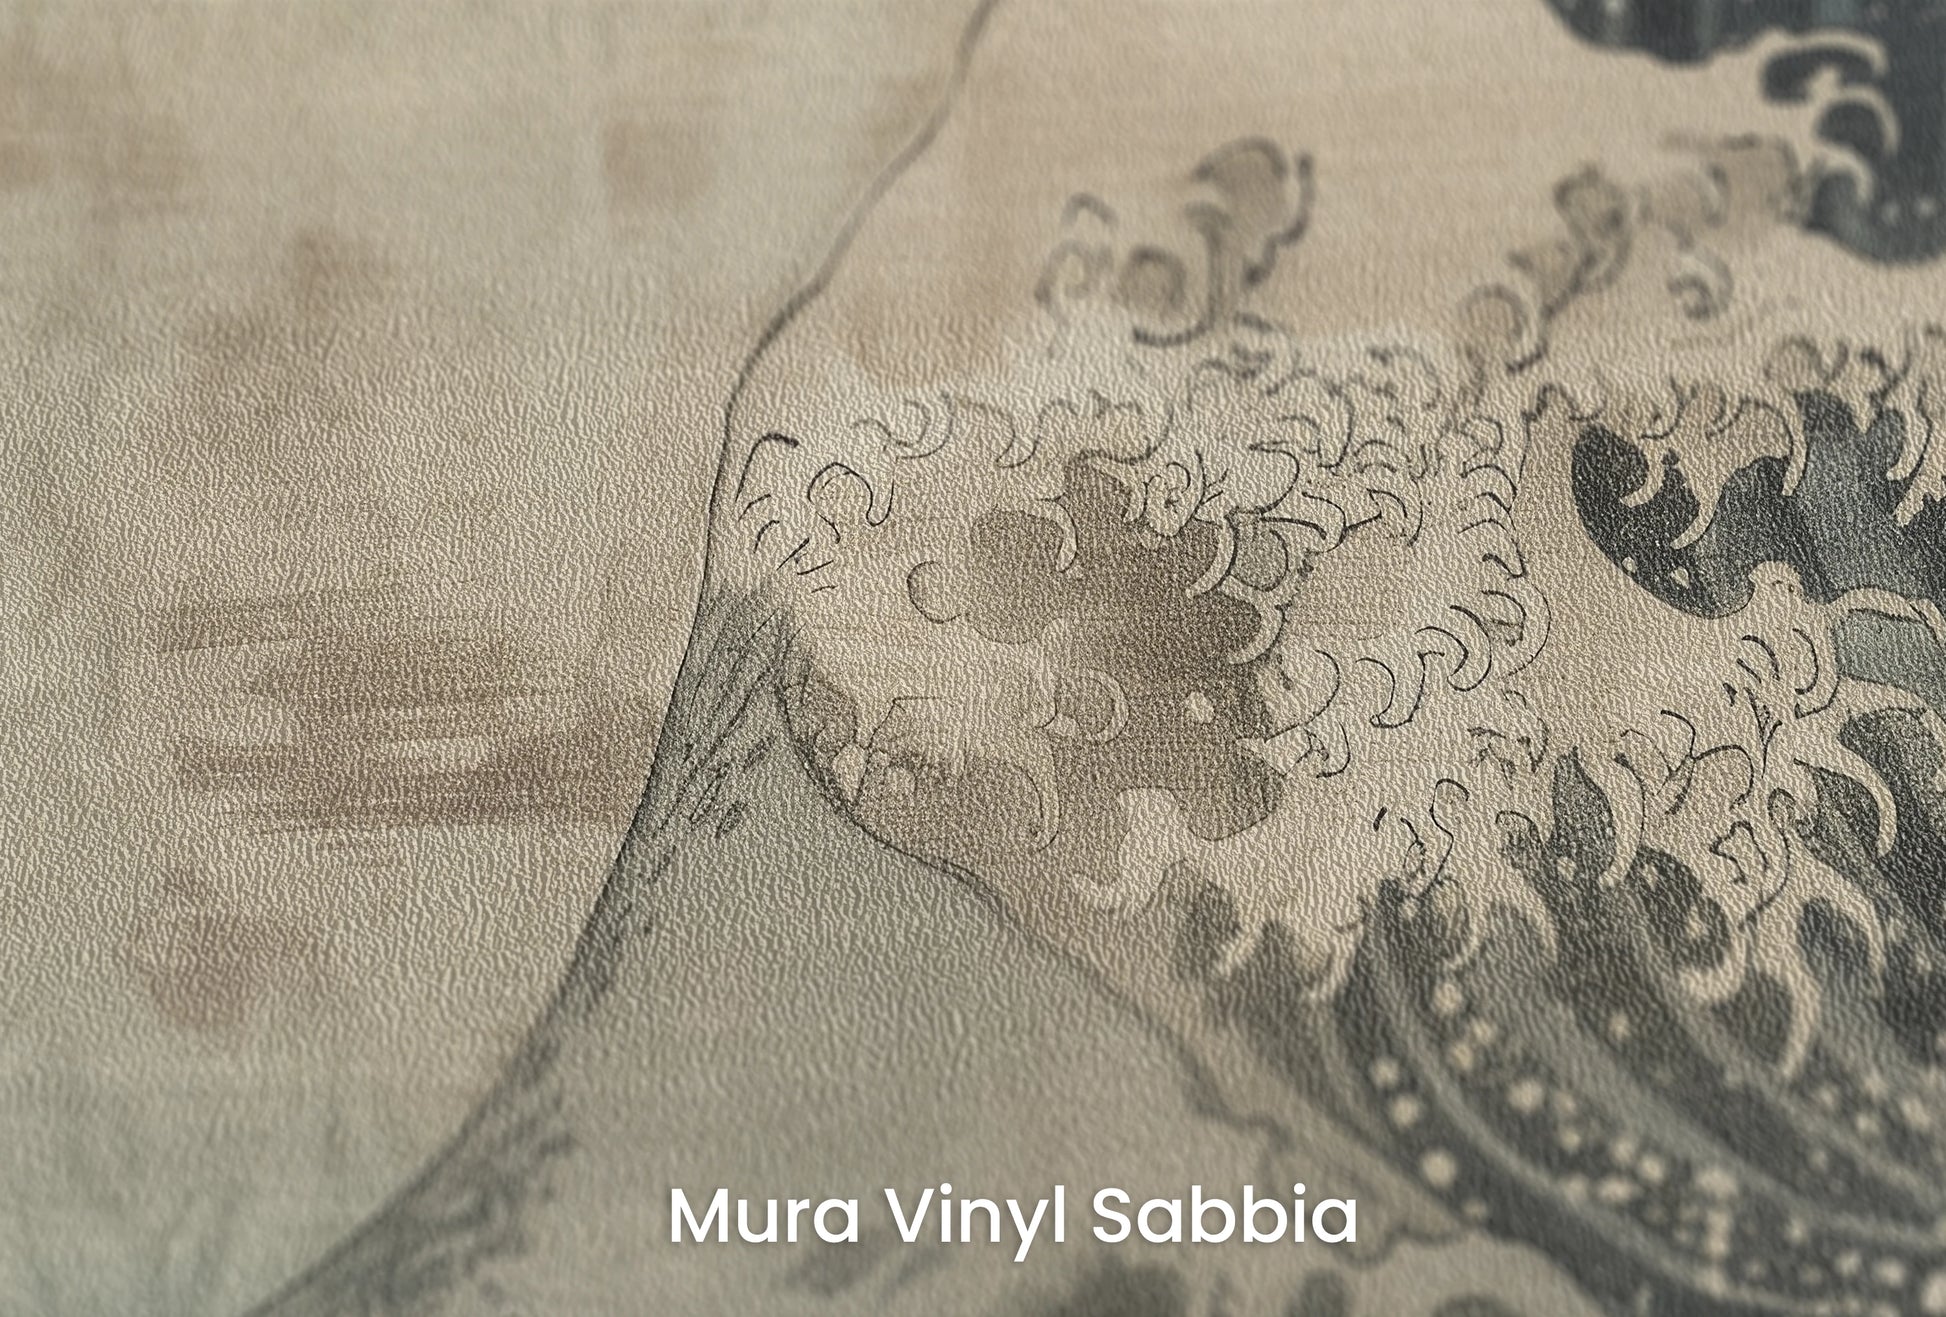 Zbliżenie na artystyczną fototapetę o nazwie Sapphire Swirl na podłożu Mura Vinyl Sabbia struktura grubego ziarna piasku.